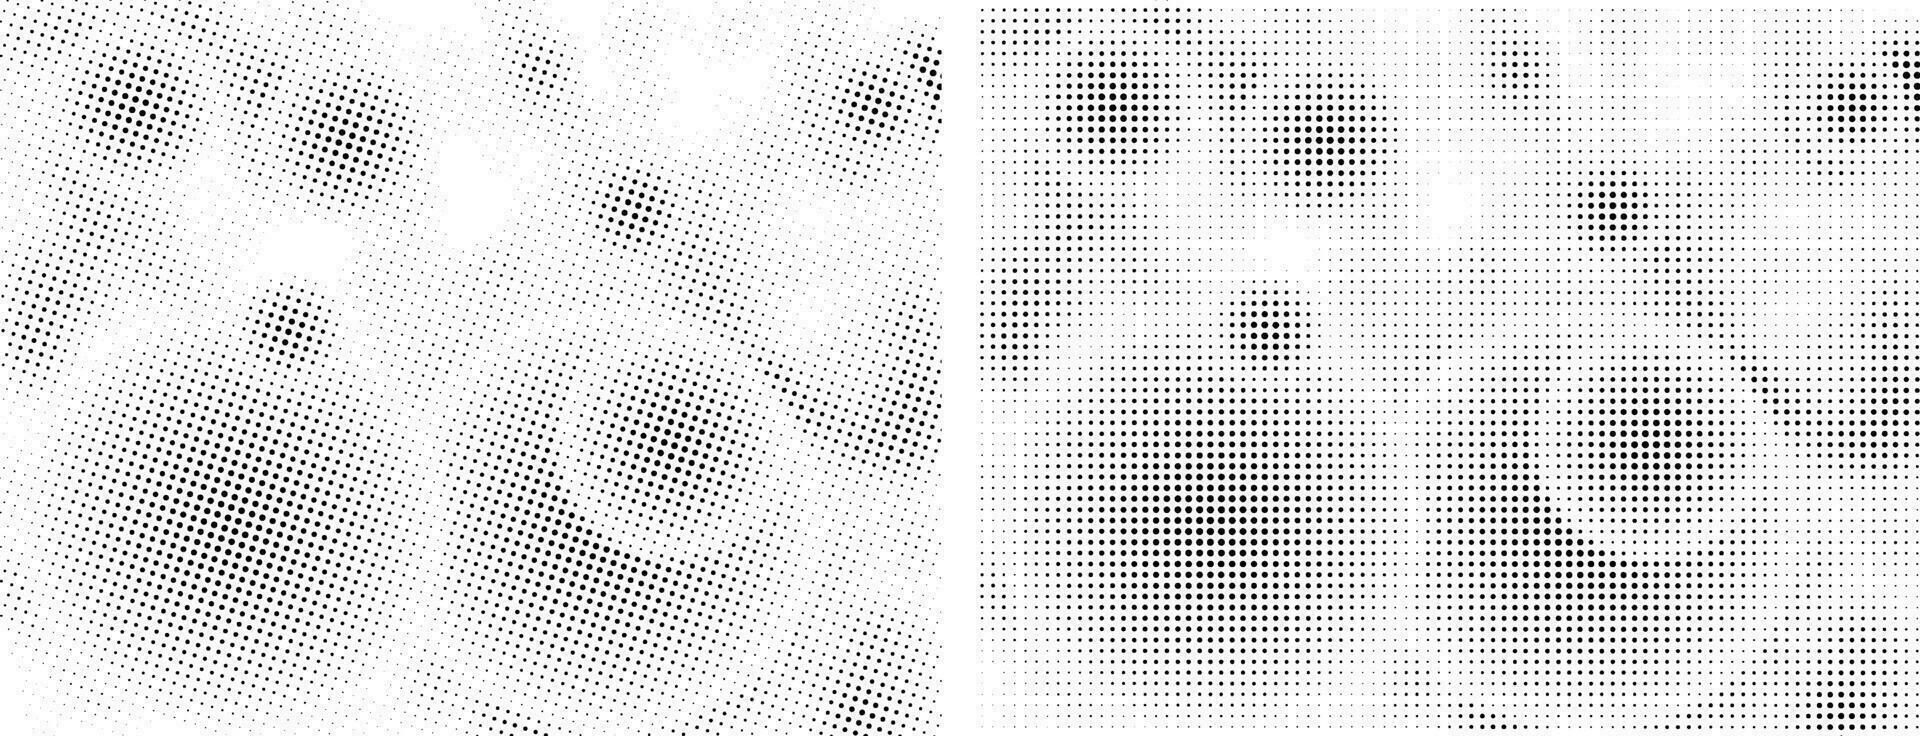 een reeks van vier verschillend abstract dots patronen, een zwart en wit halftone patroon met stippen, een zwart en wit tekening helling dots effect, grunge effect met ronde cirkel dol op structuur vector